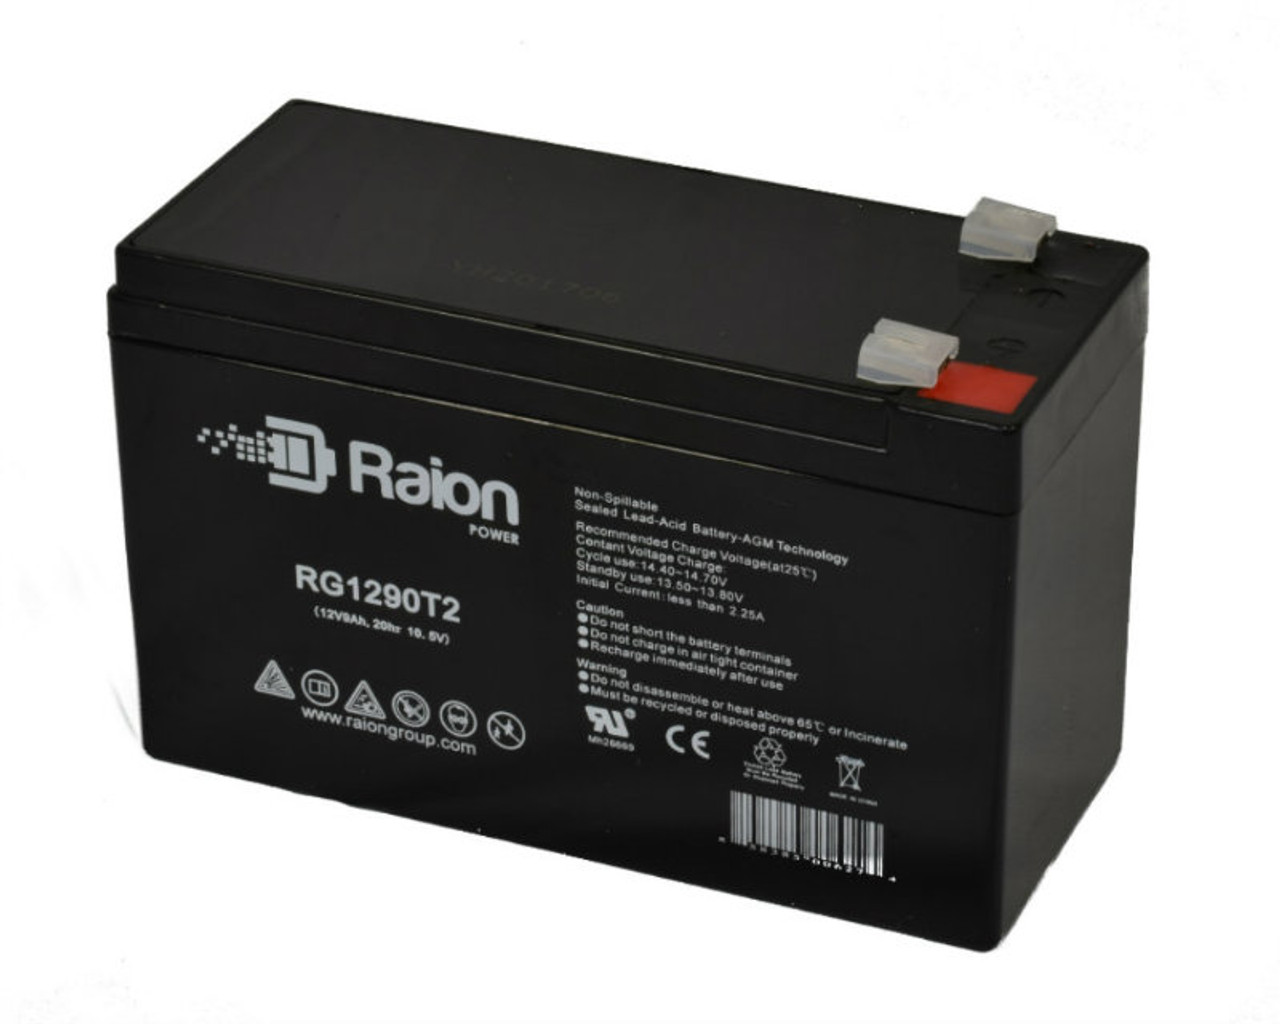 Raion Power RG1290T2 12V 9Ah AGM Battery for BB SHR10-12